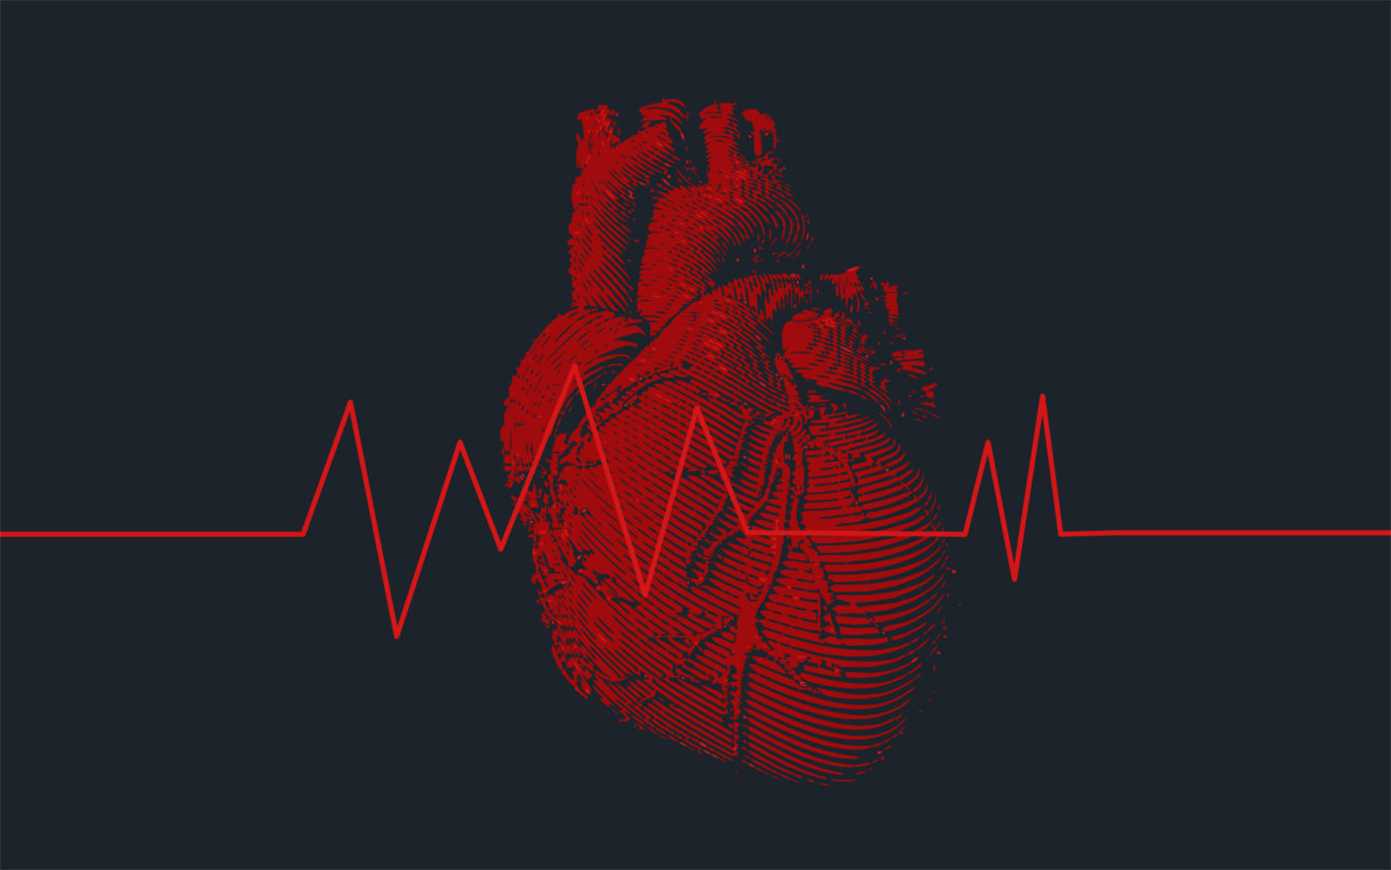 Больному сердцу помогу незрелые сердечные клетки